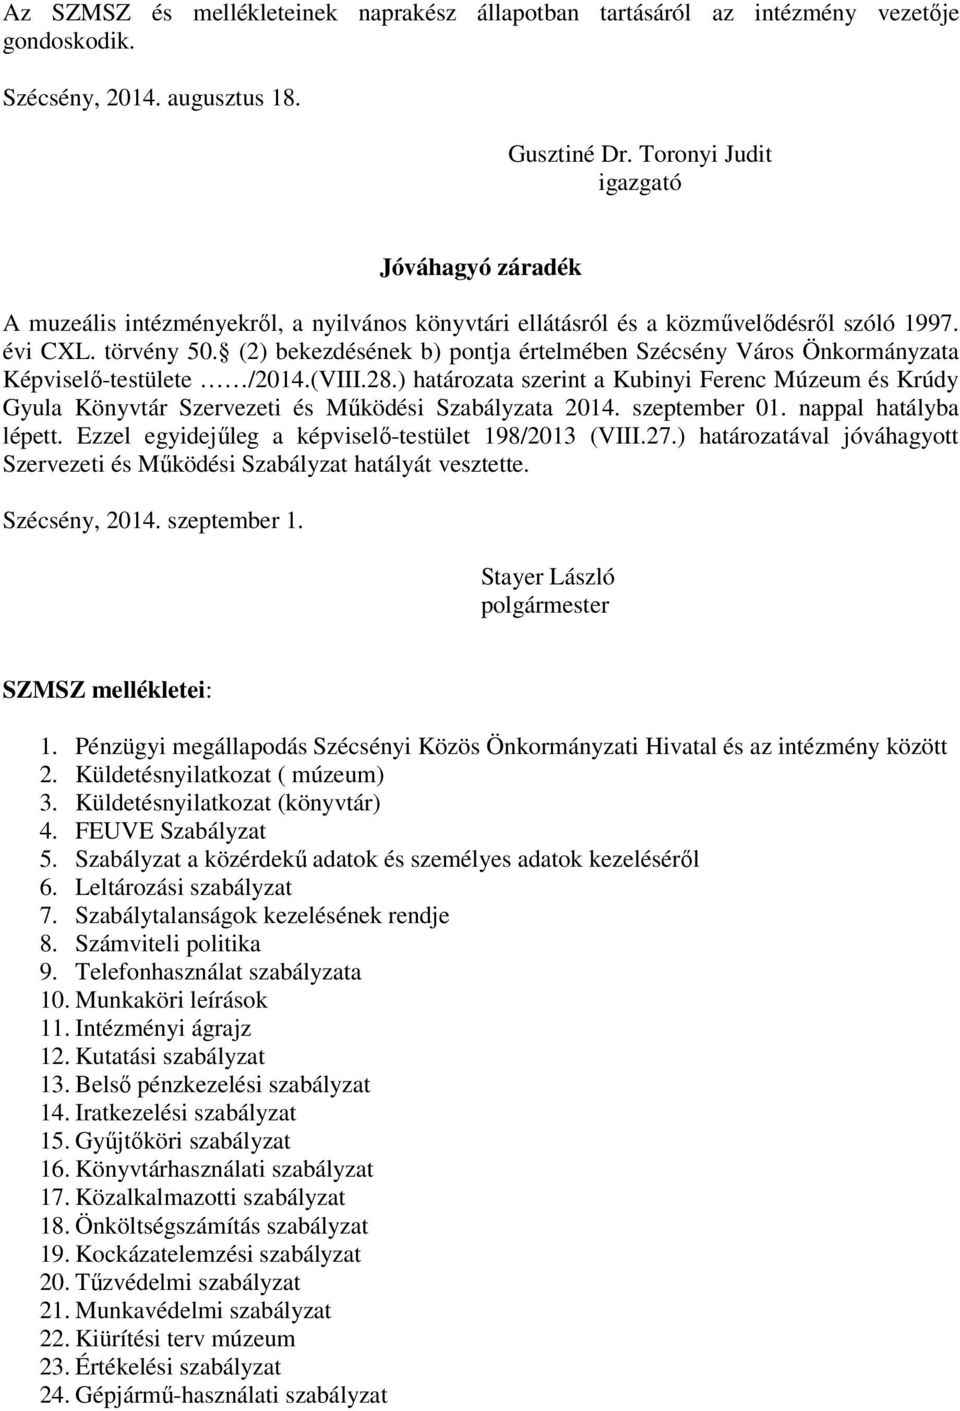 (2) bekezdésének b) pontja értelmében Szécsény Város Önkormányzata Képviselő-testülete /2014.(VIII.28.